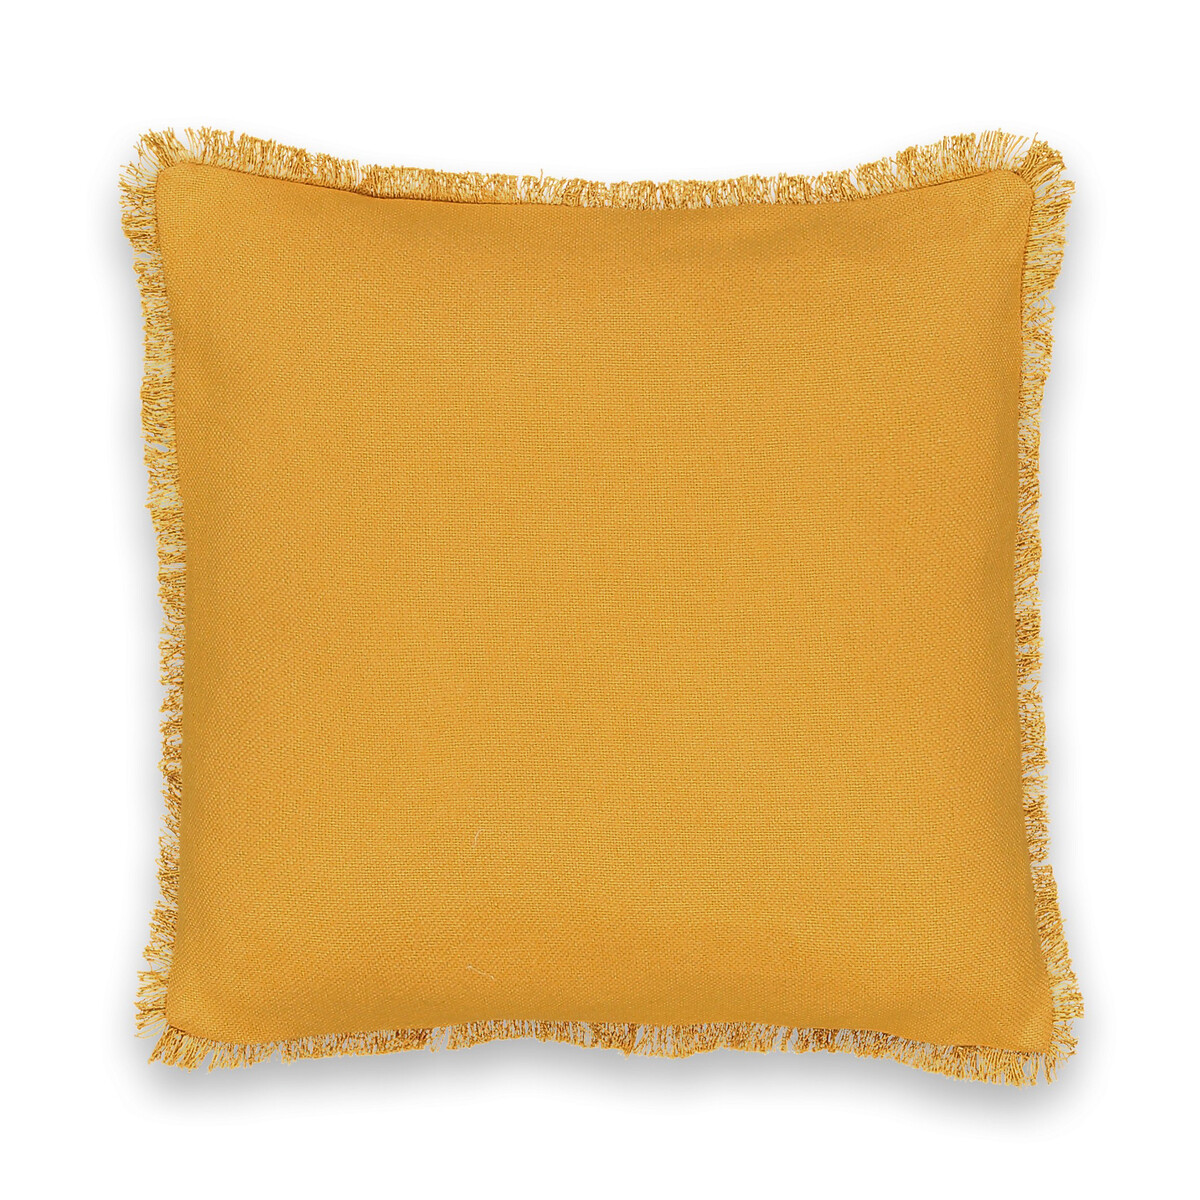 Чехол LaRedoute На подушку из плетеного хлопка Panama 40 x 40 см желтый, размер 40 x 40 см